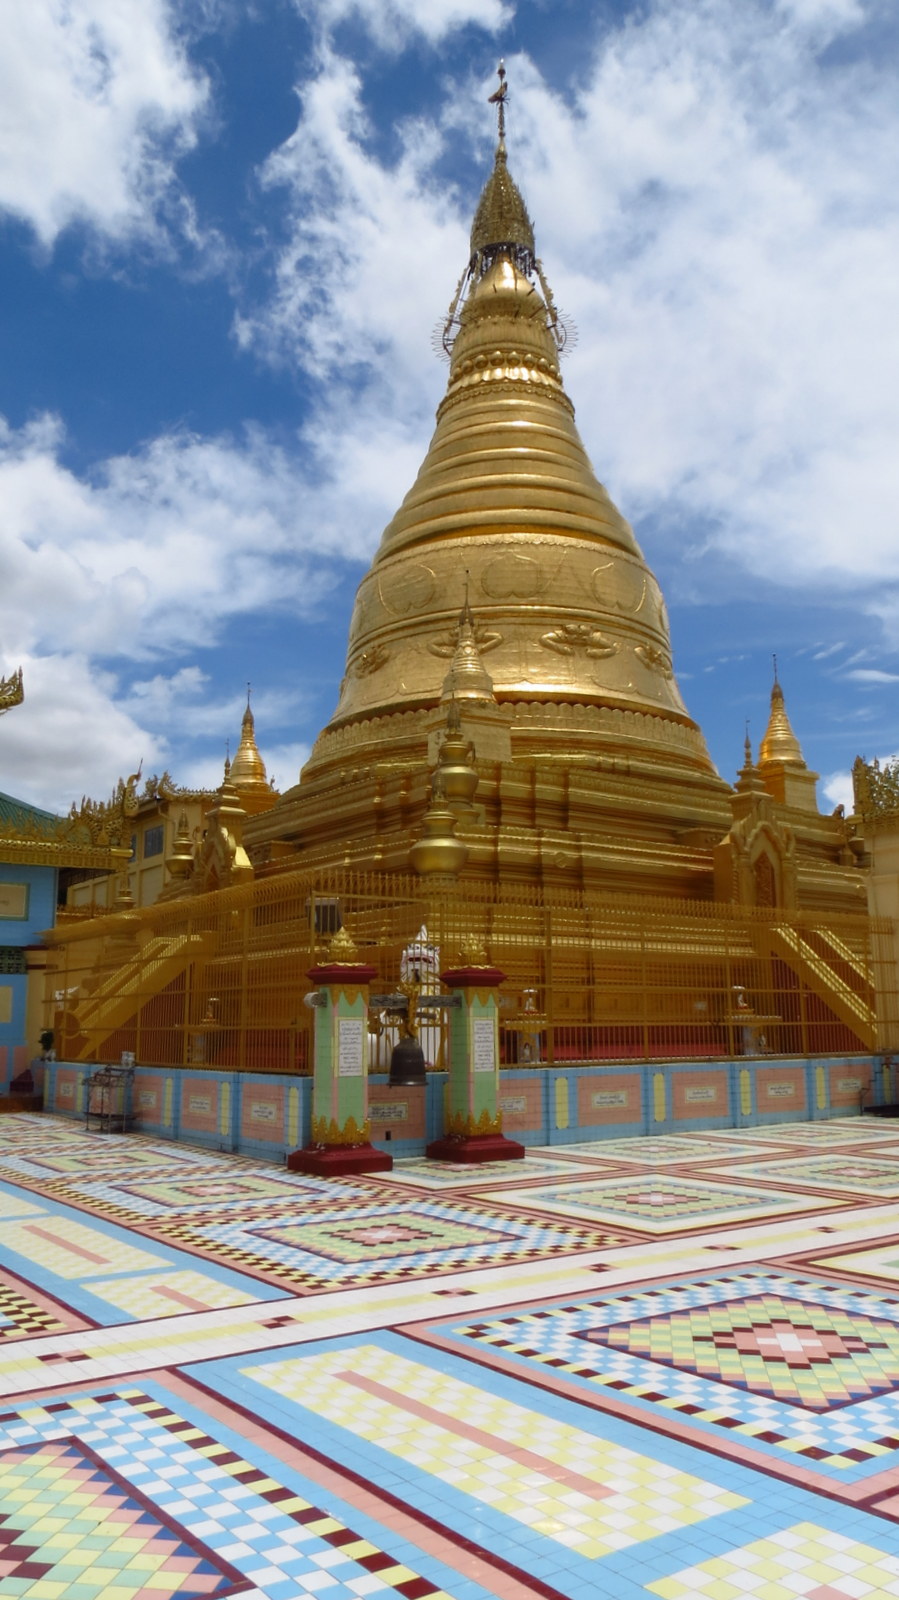 sagaing-temple-tiles-and-stupa